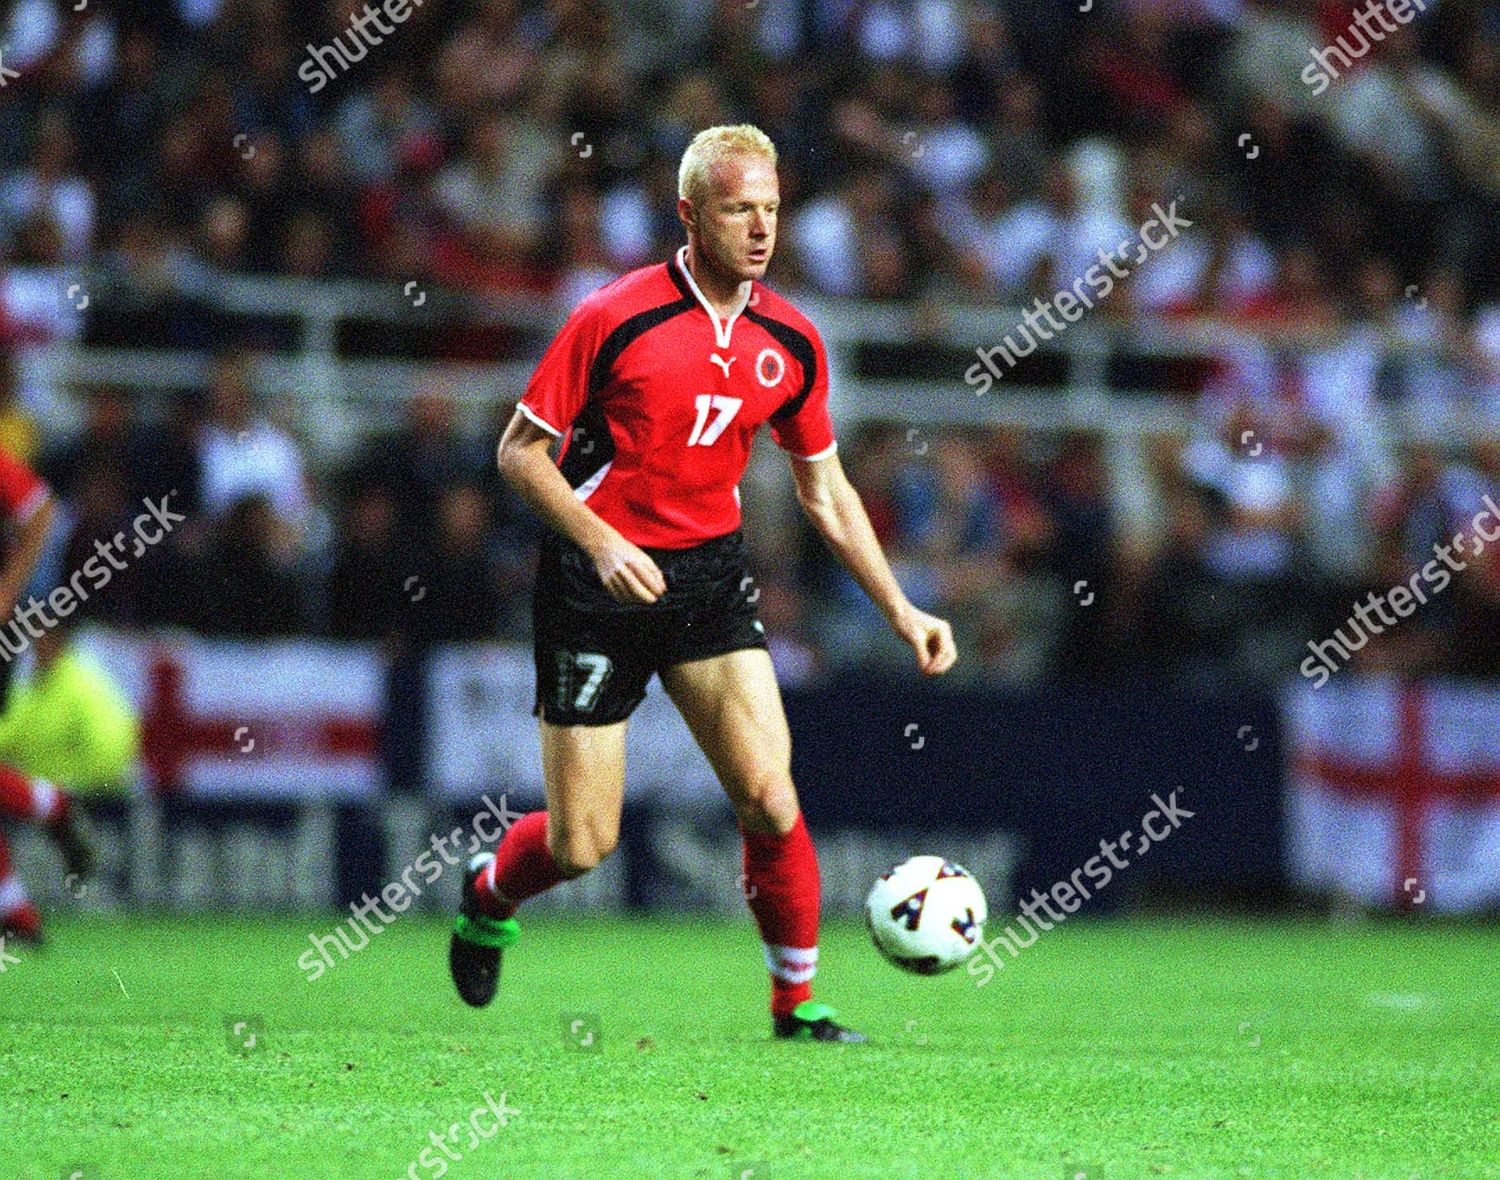 WC 2002 Qual: England 2 Albania 0 - 05 Sep 1901